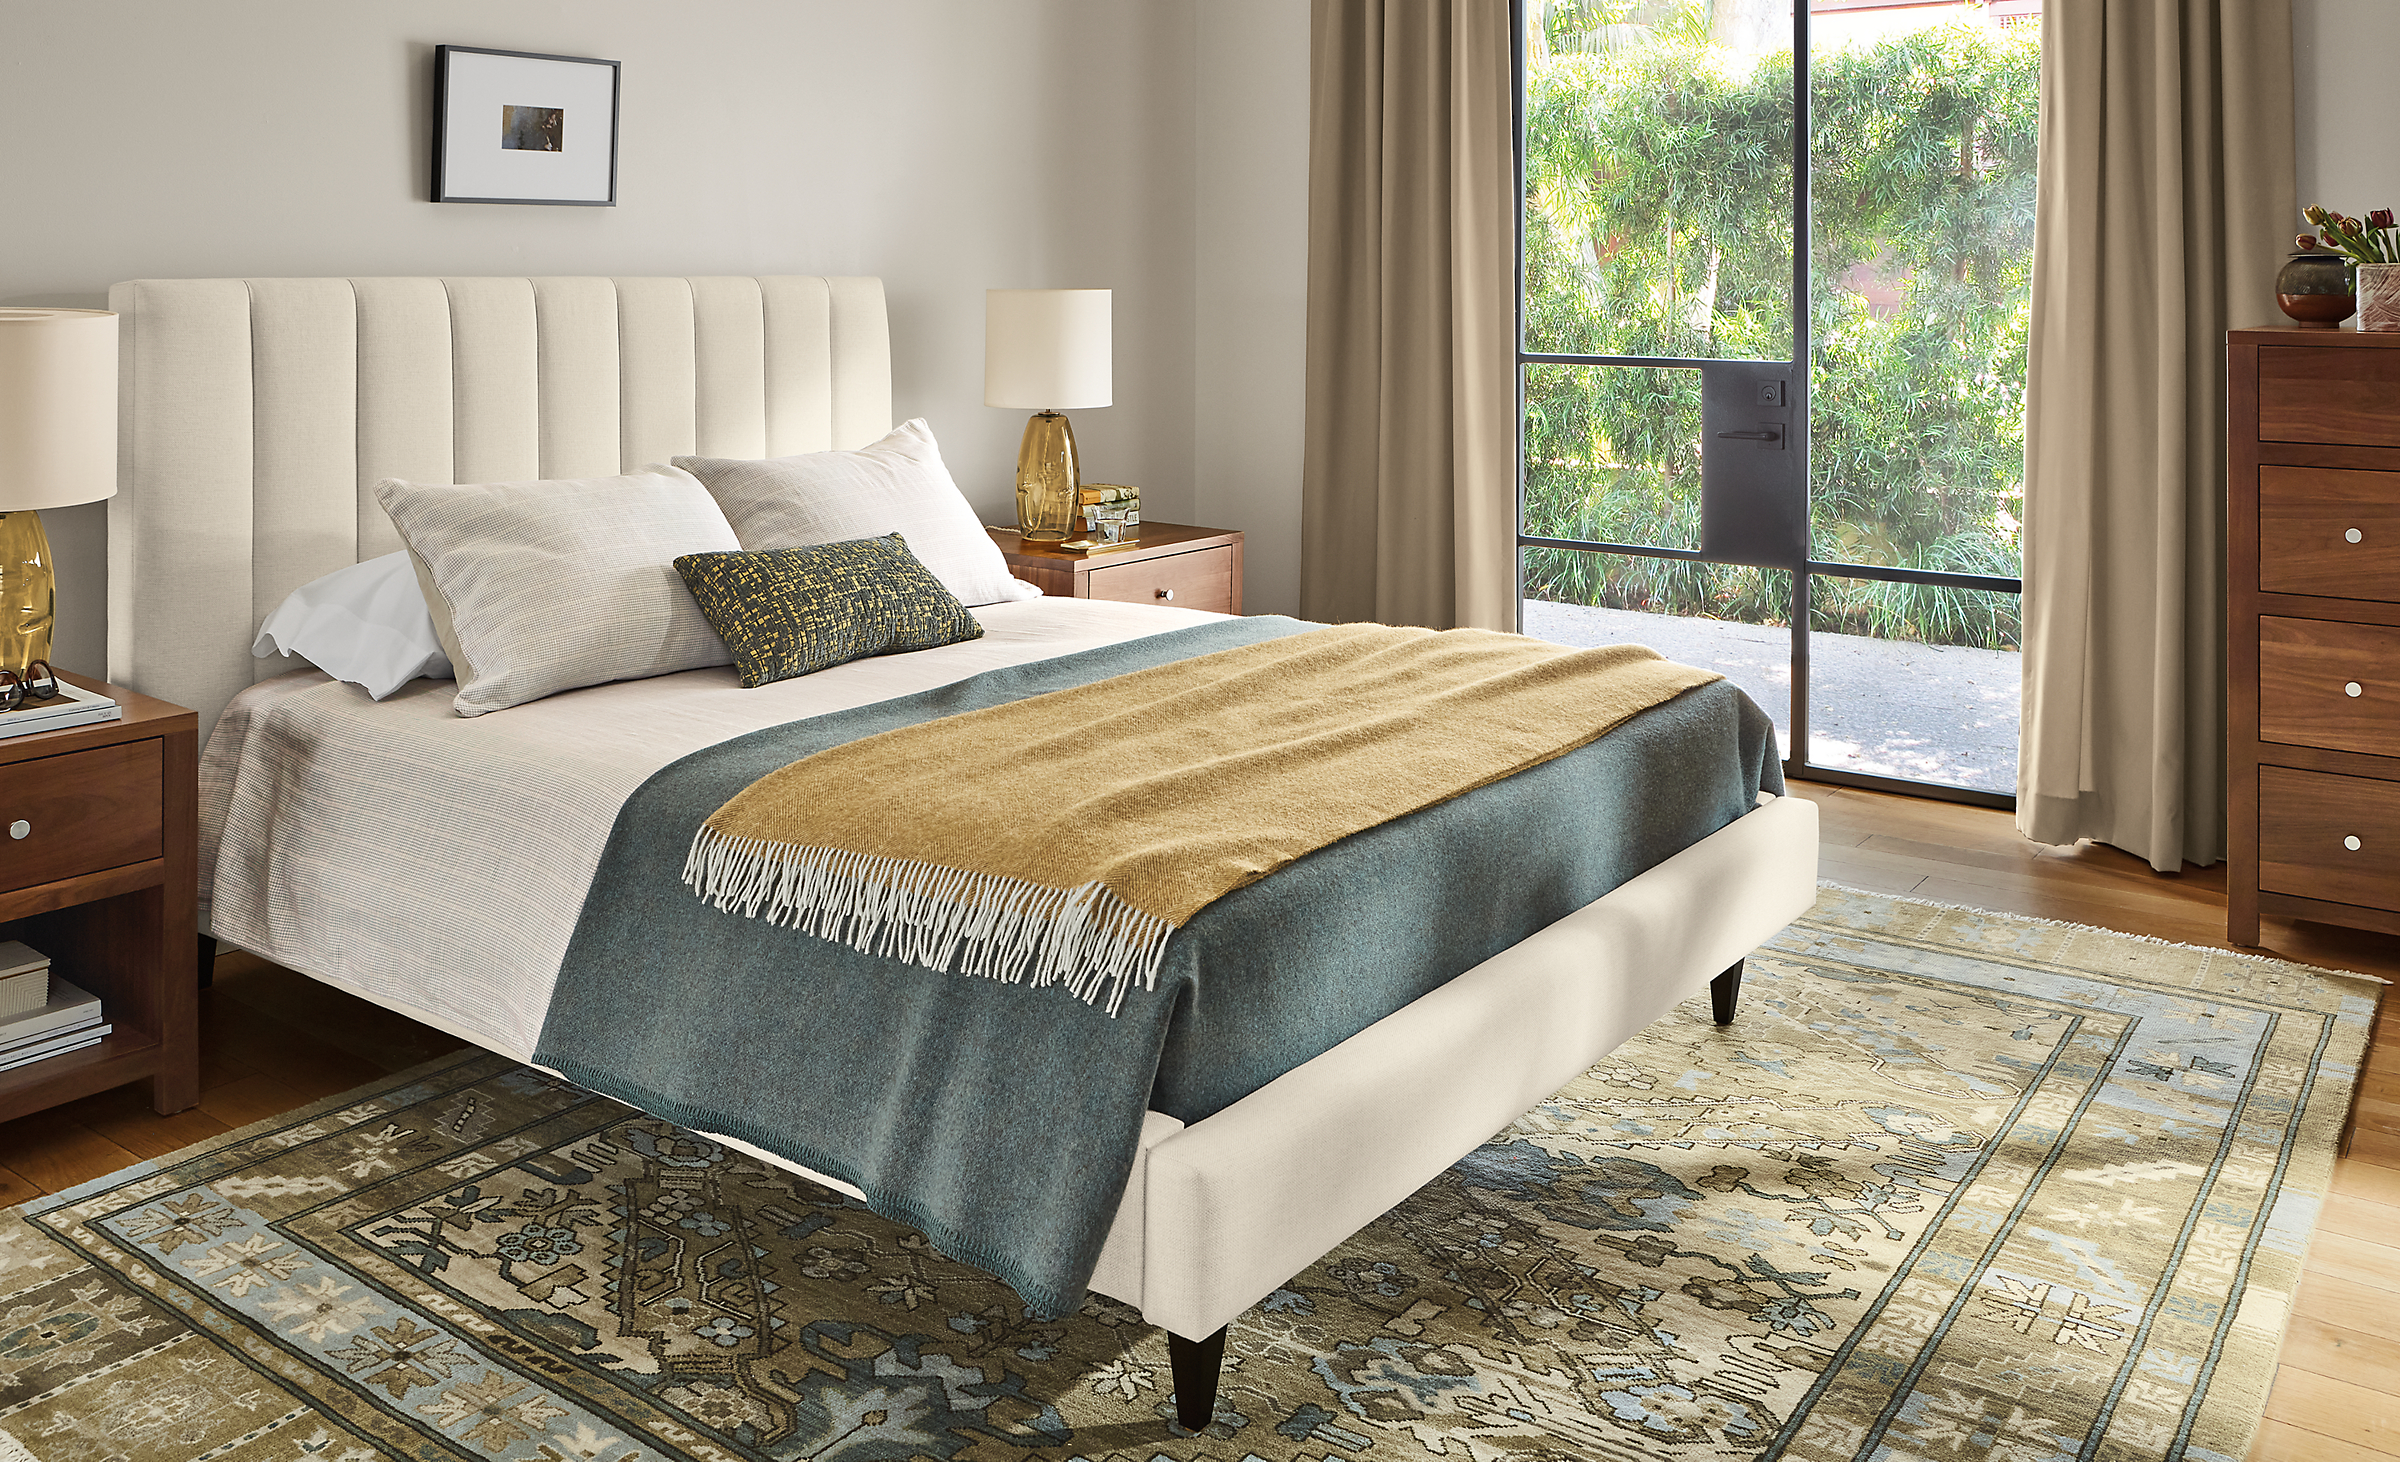 Bedroom with Hartley queen bed in Sumner ivory, Kayseri rug in moss, Corwin dresser and nightstands in walnut.